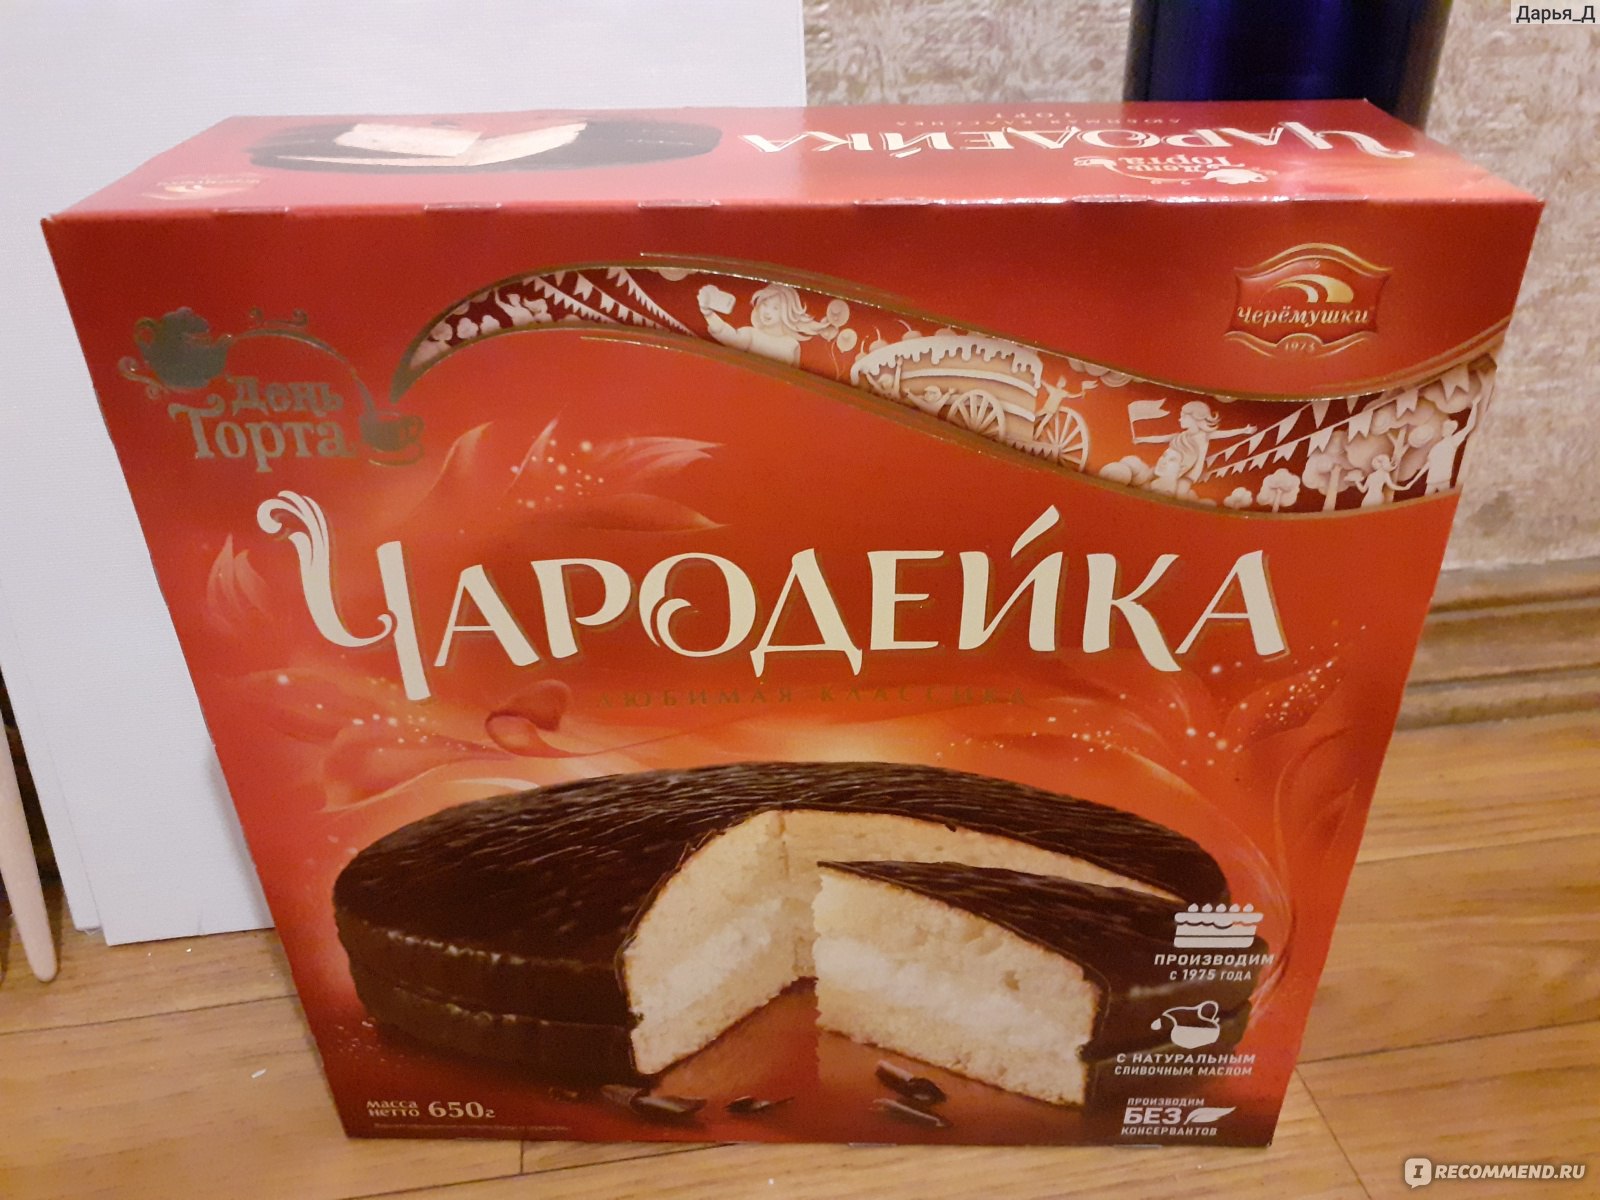 Торт Чародейка упаковка